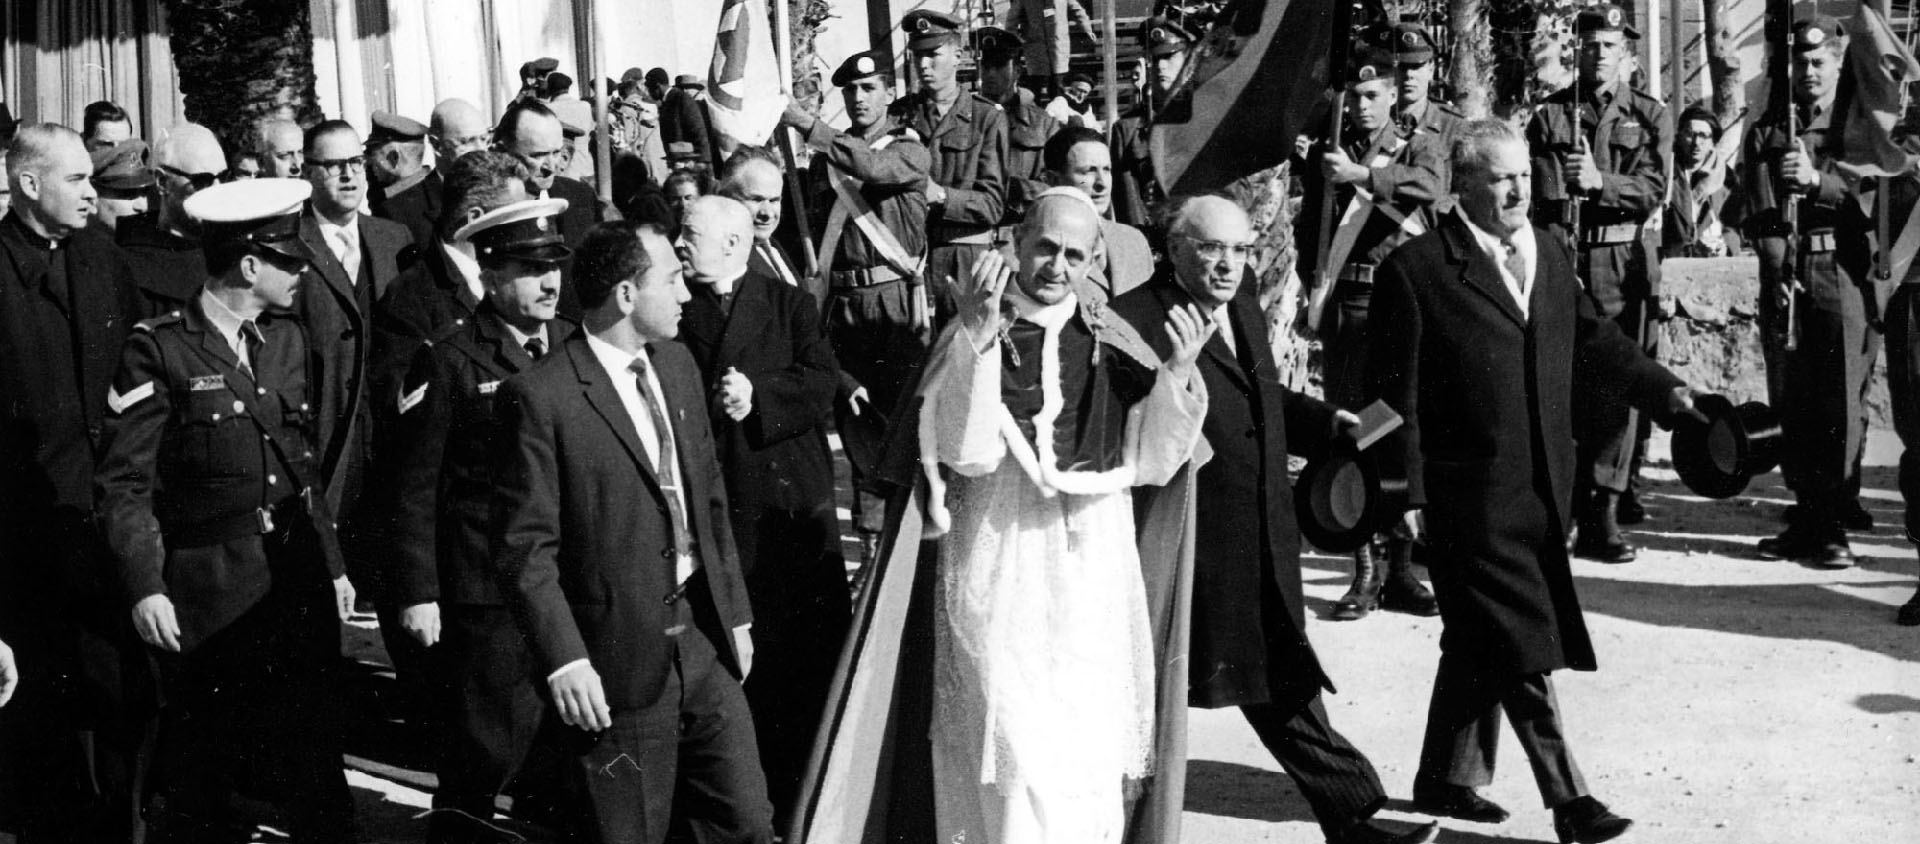 Des dignitaires israéliens escortent le pape Paul VI qui marche sur un tapis rouge. Le président israélien Zhelman Shazar marche à côté du pape, au centre | © Keystone/AP-Photo